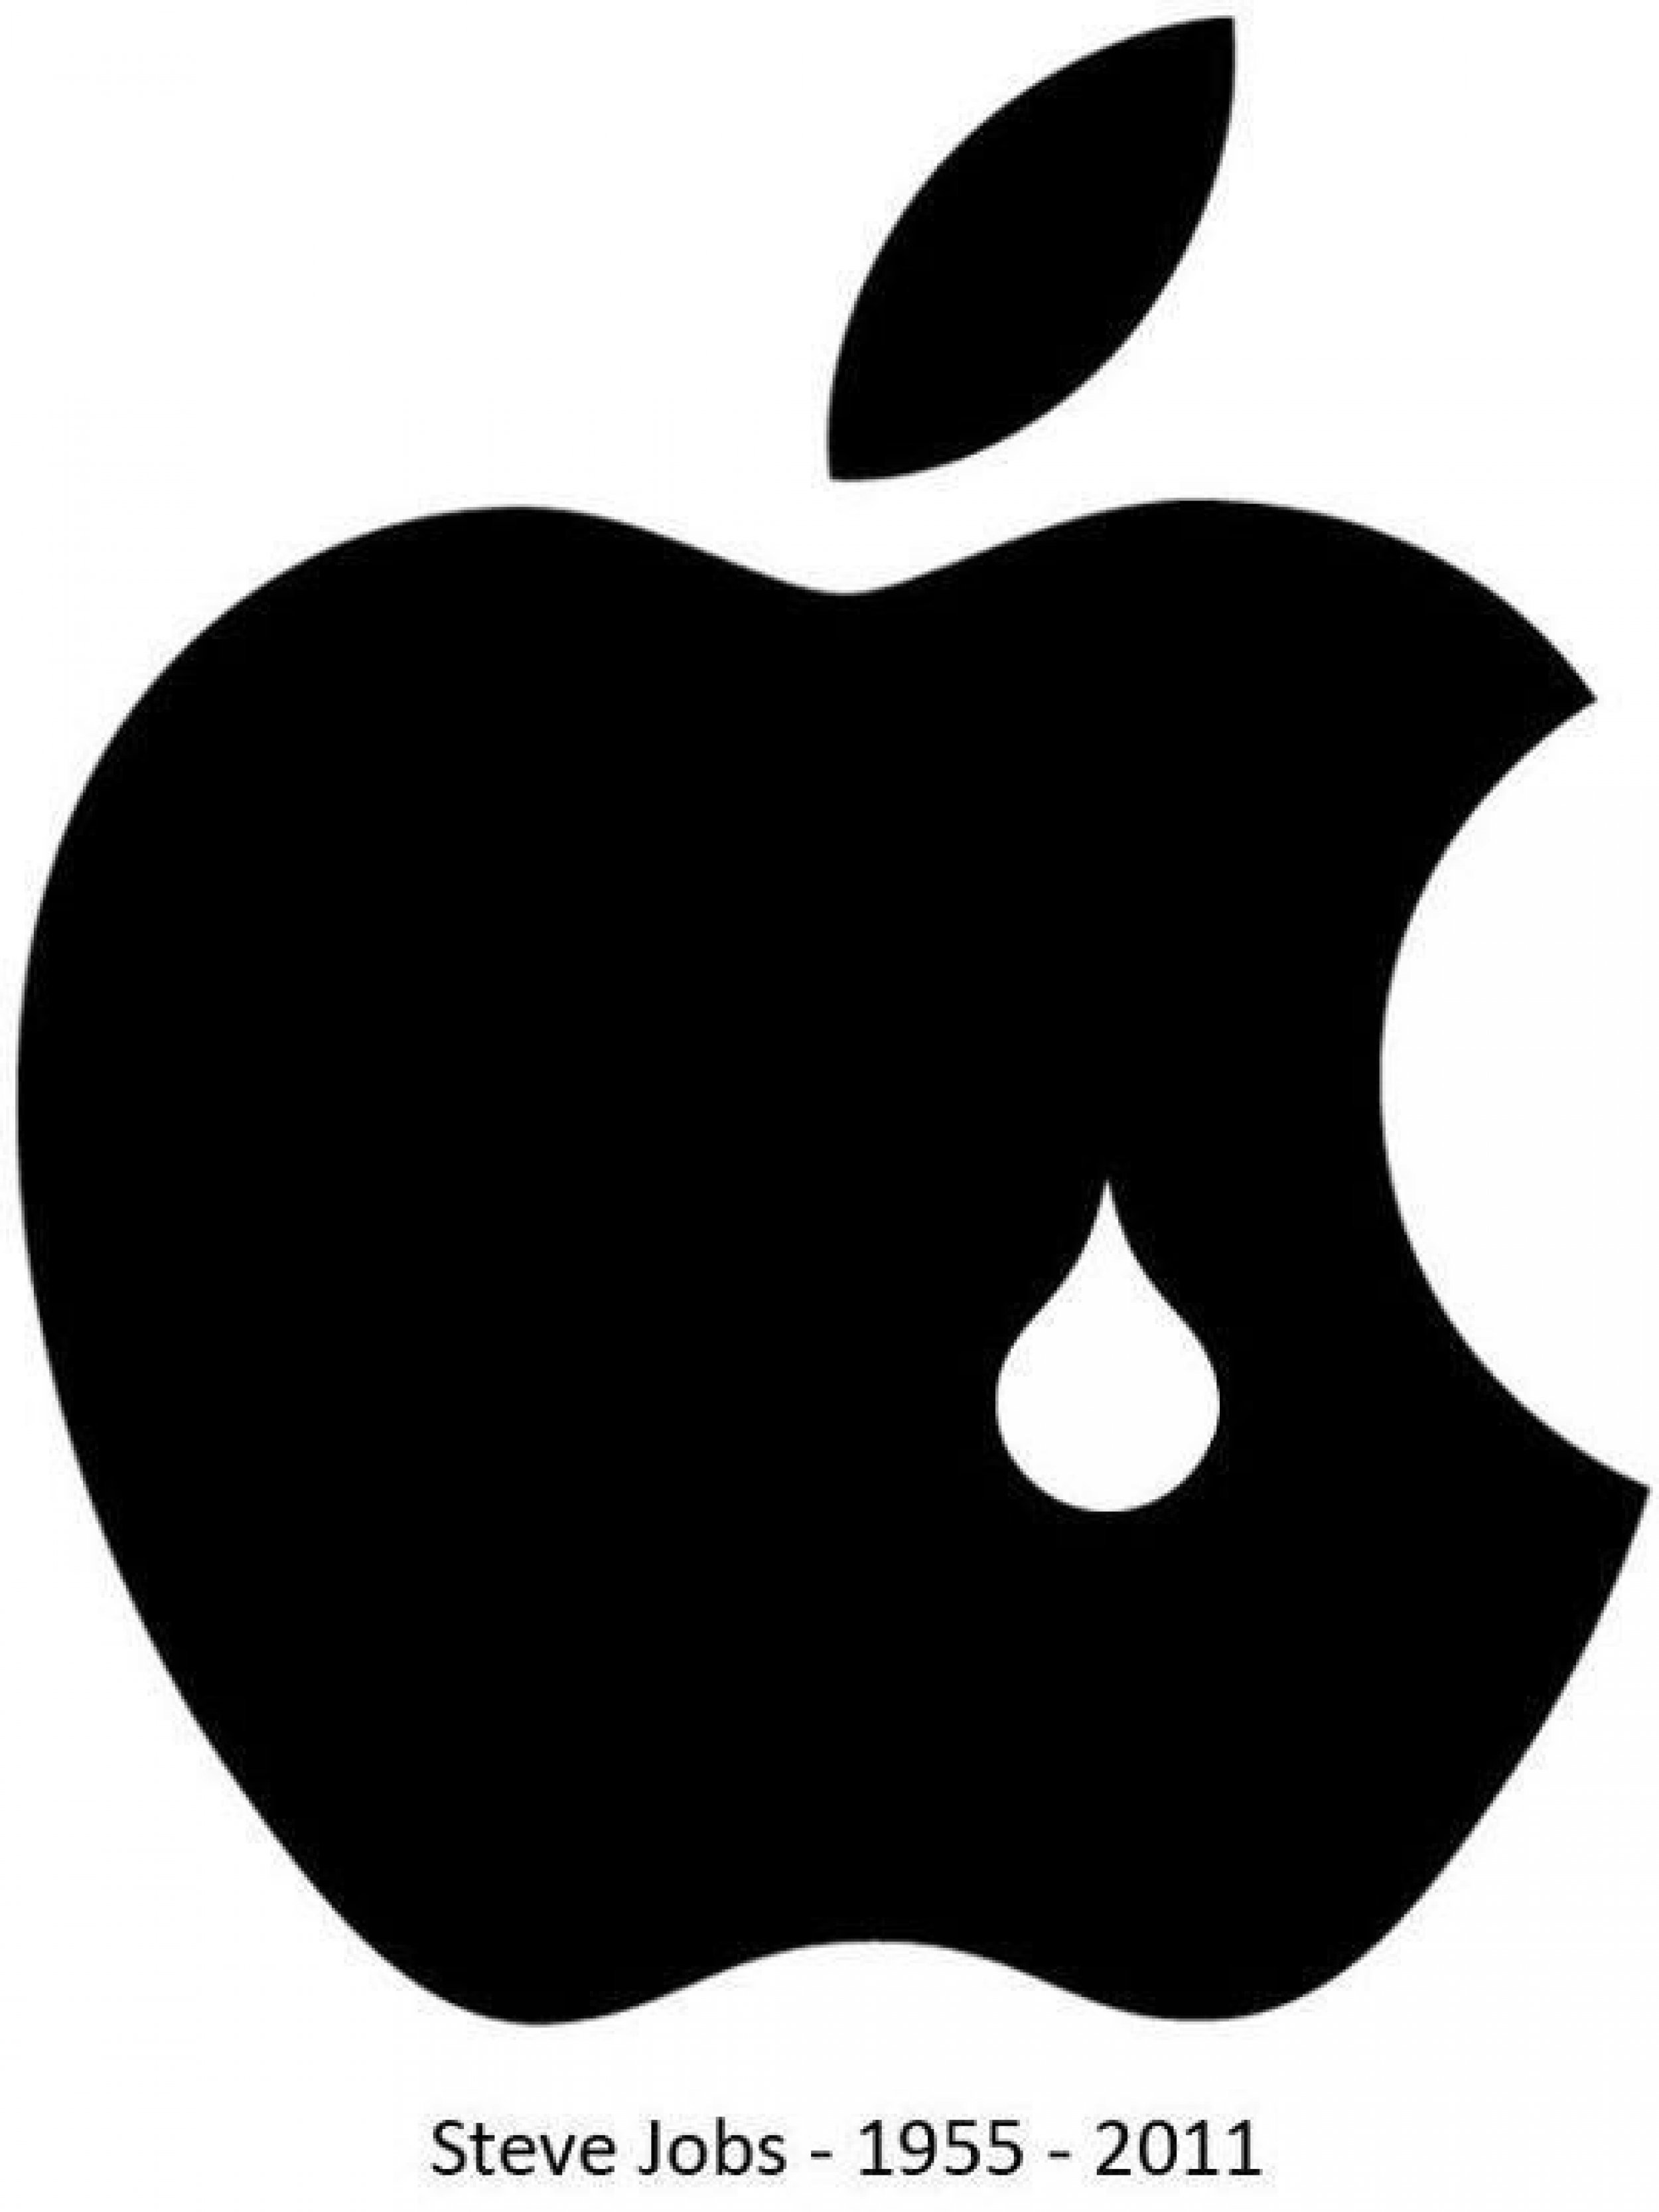 Steve Jobs Dies